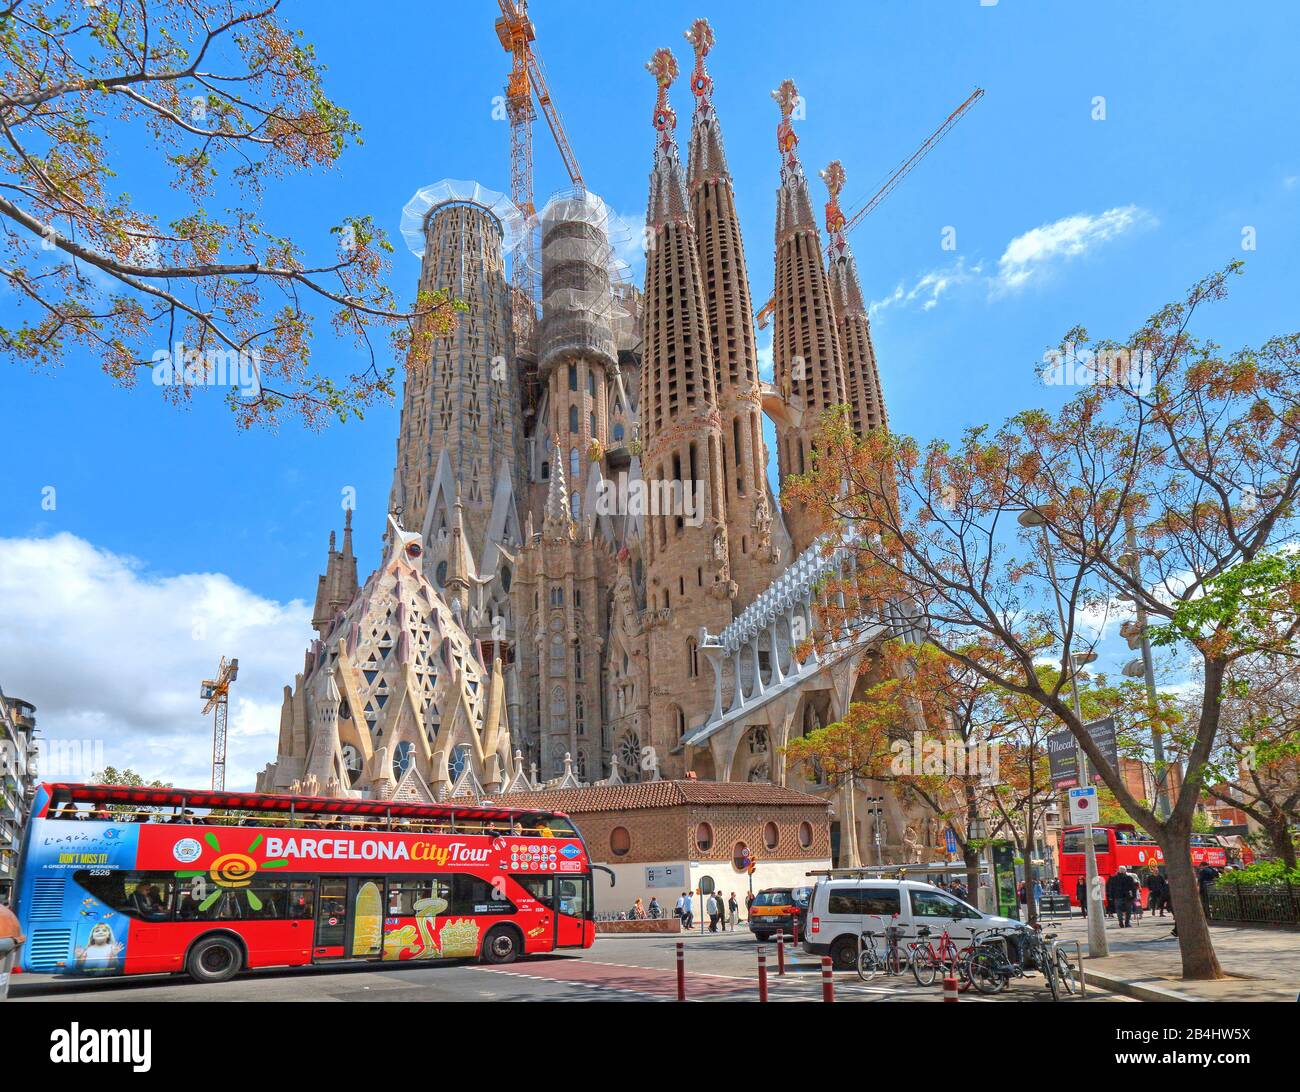 City tour bus con la catedral de la Sagrada Familia de Antoni Gaudí en Barcelona, Cataluña, España Foto de stock